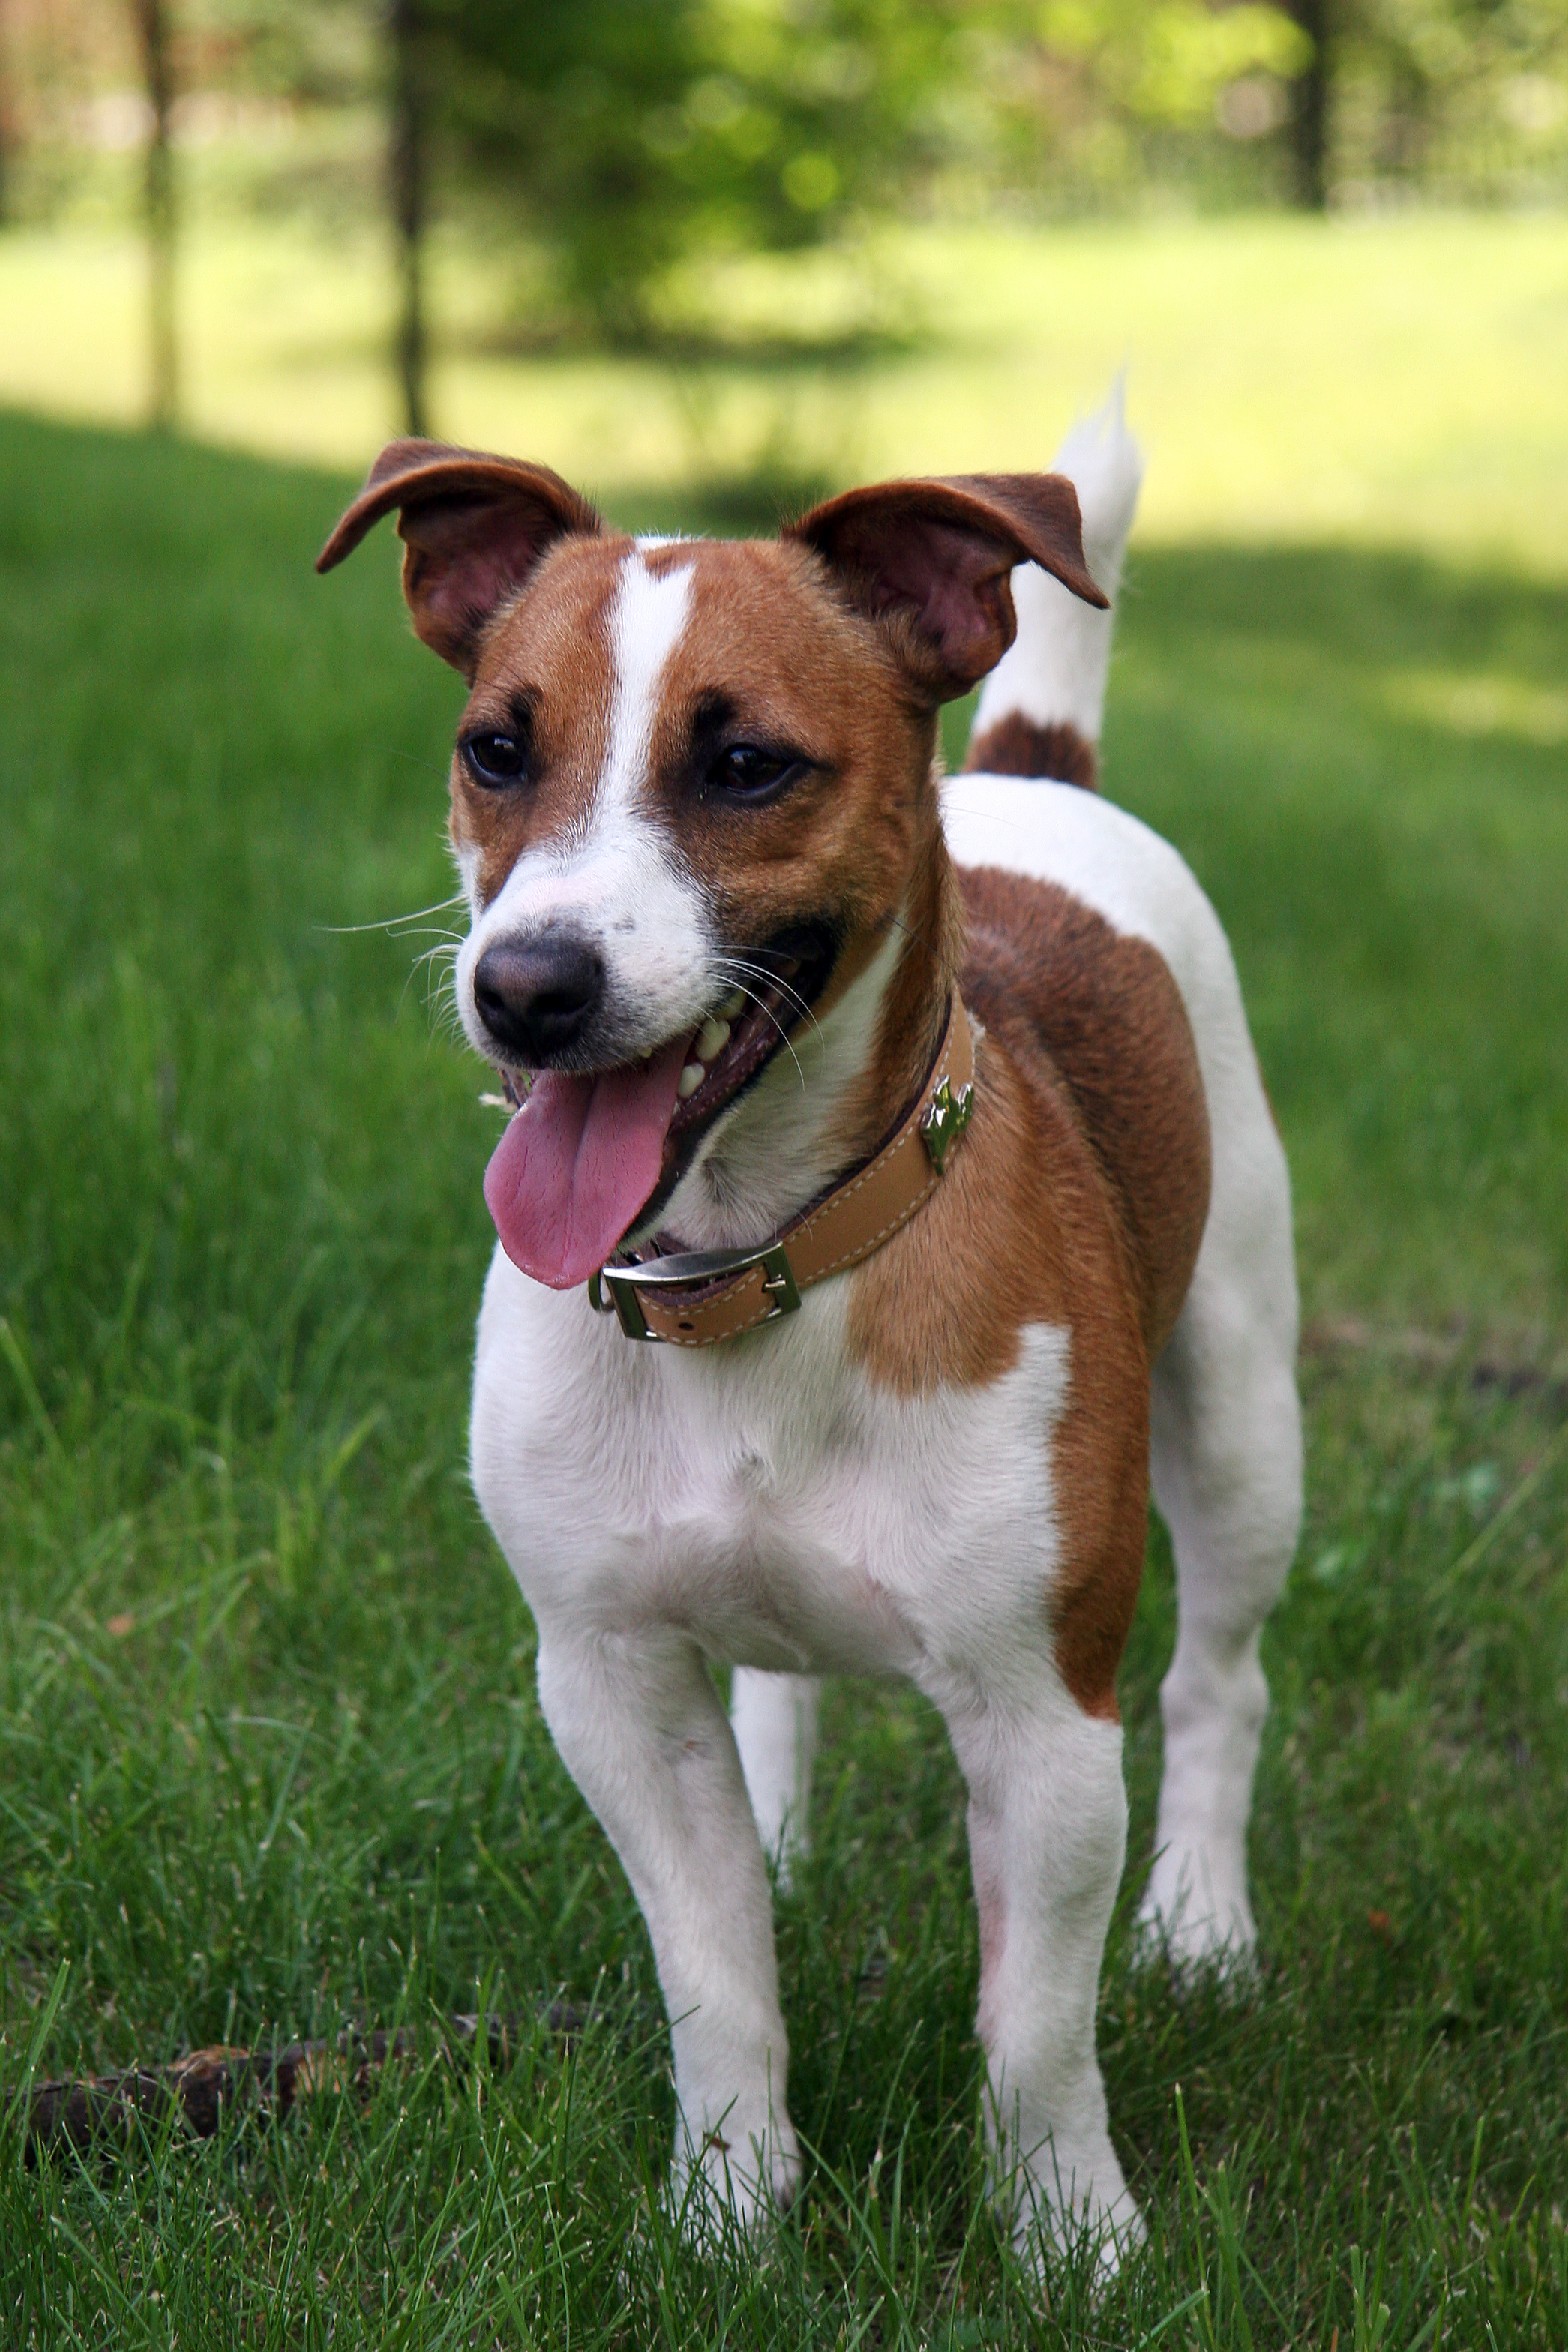 Terrier - Wikipedia